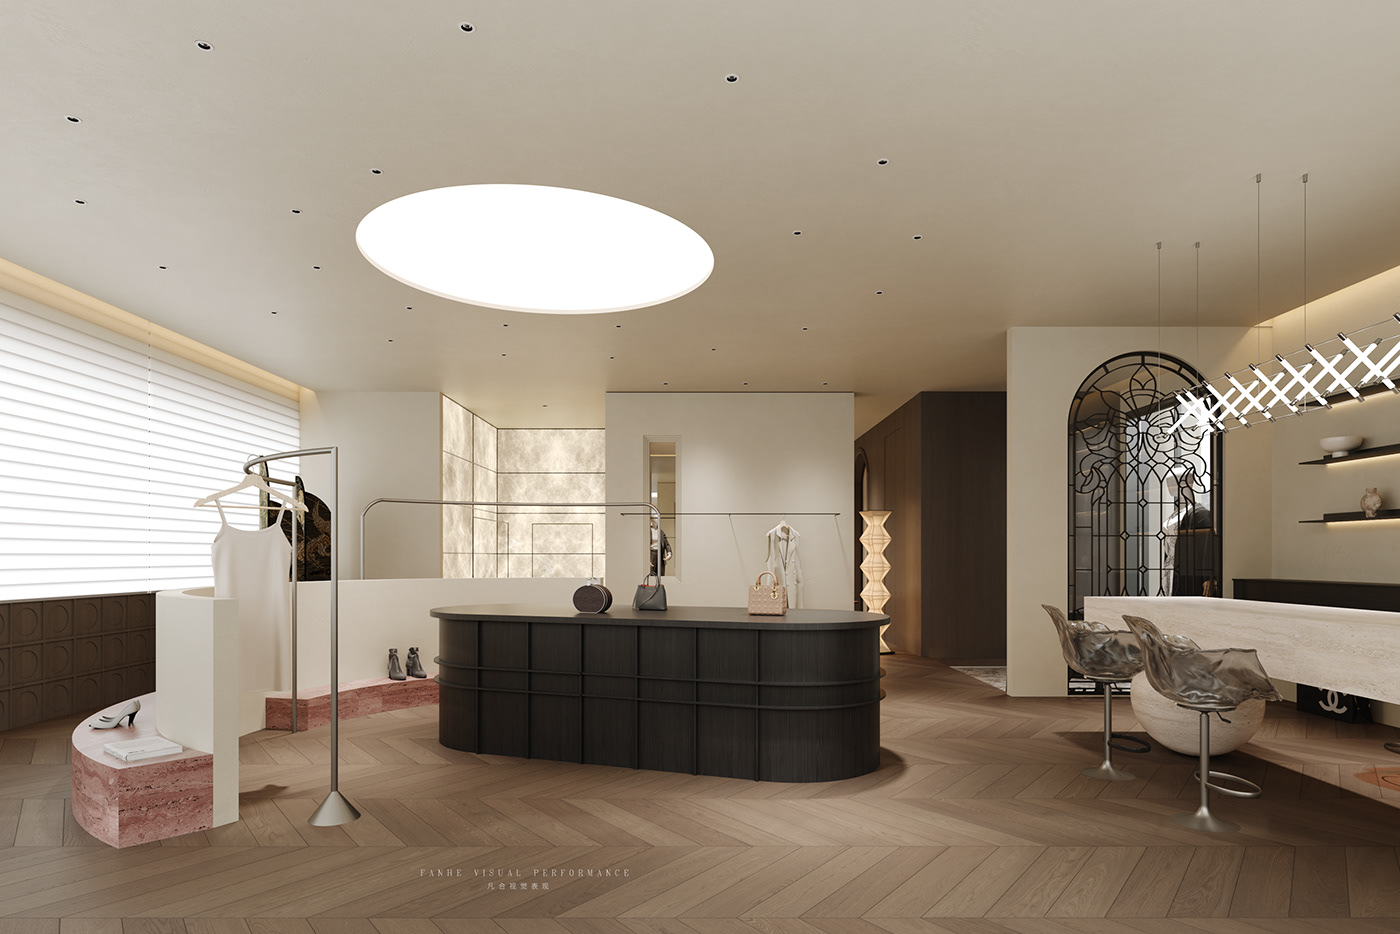 3ds max vray Render corona CGI visualization interior design  architecture 3D modern